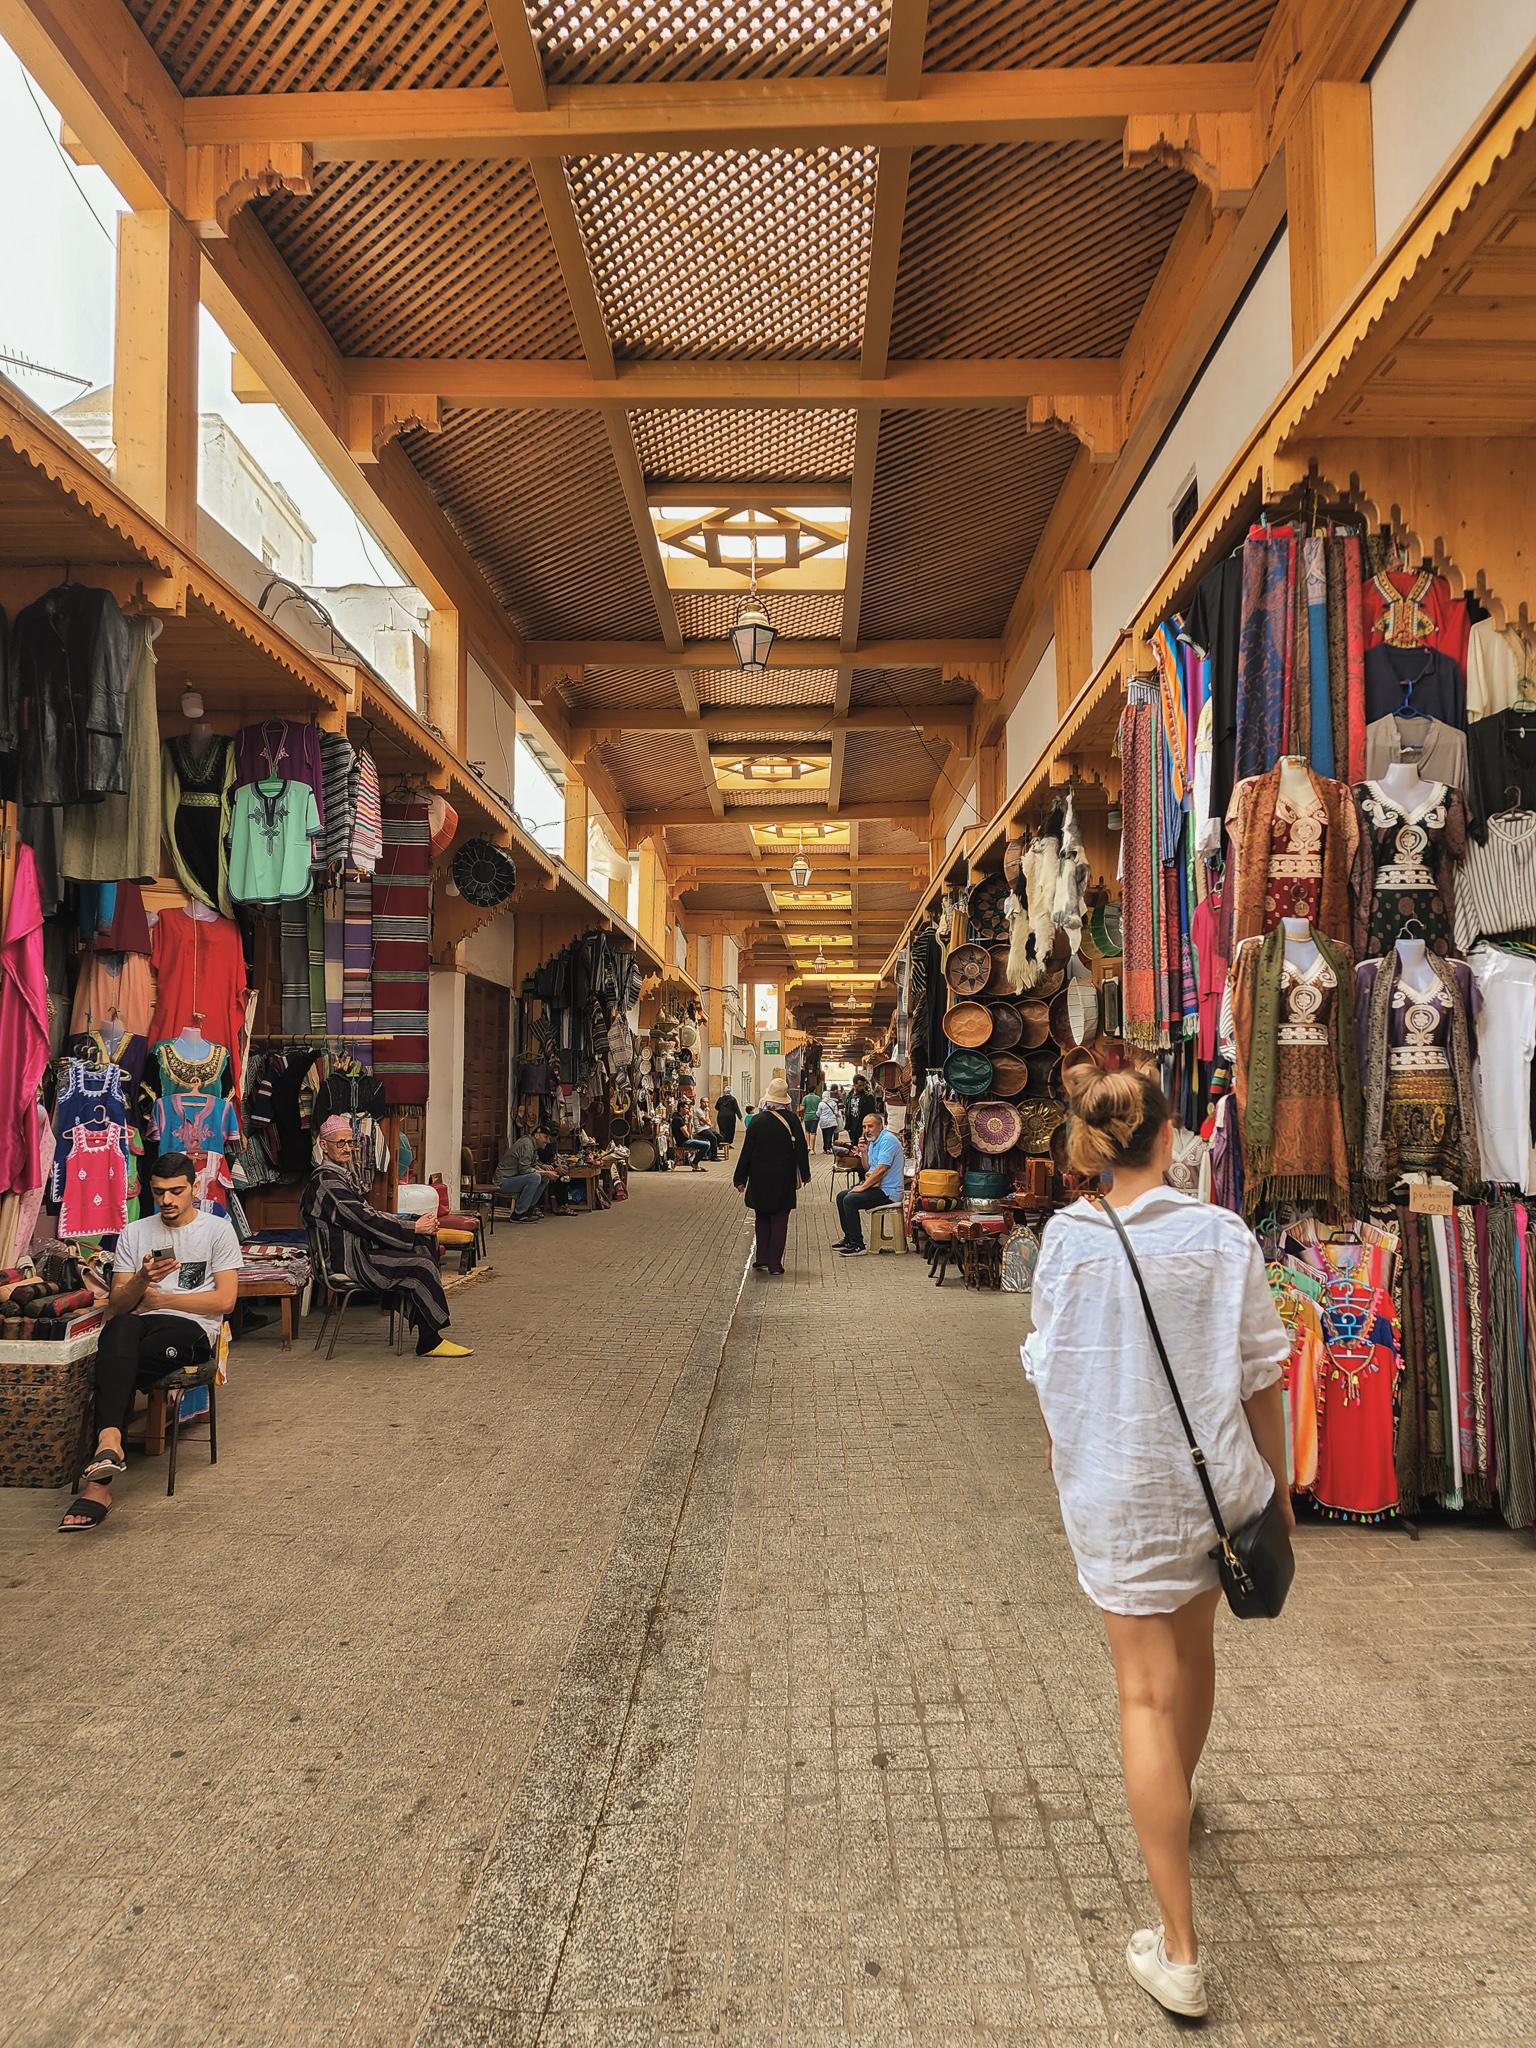 Morocco Medina market things to do